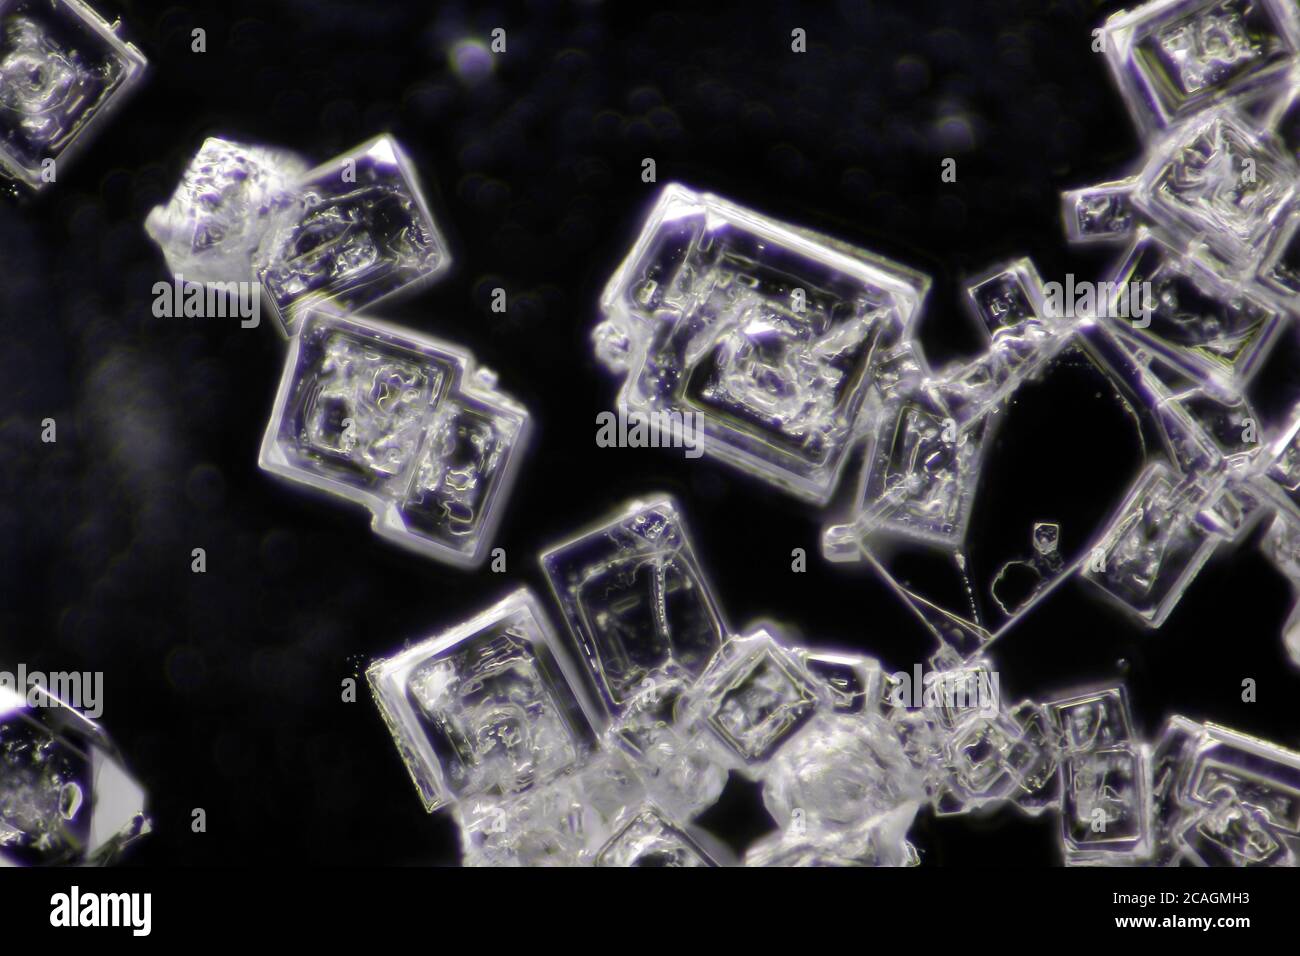 Vue microscopique des cristaux de chlorure de sodium. Éclairage de fond noir. Banque D'Images